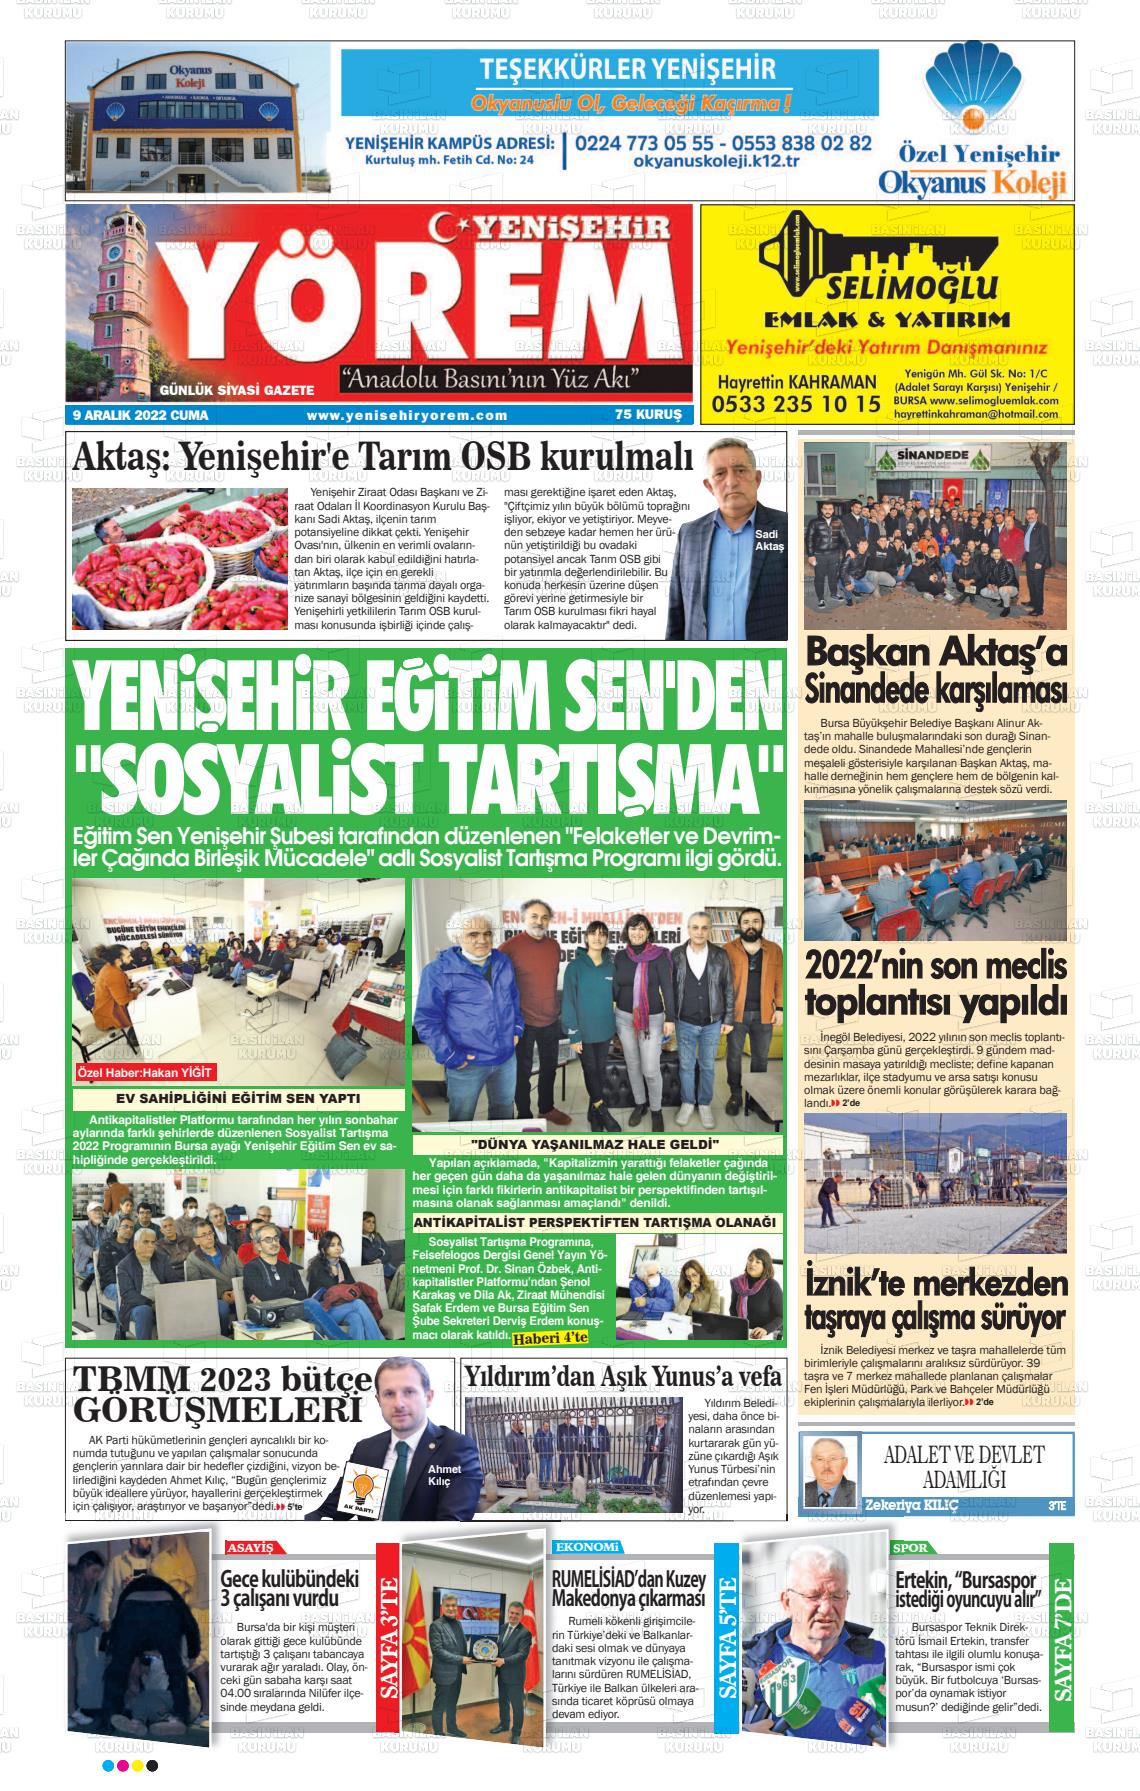 09 Aralık 2022 Yenişehir Yörem Gazete Manşeti